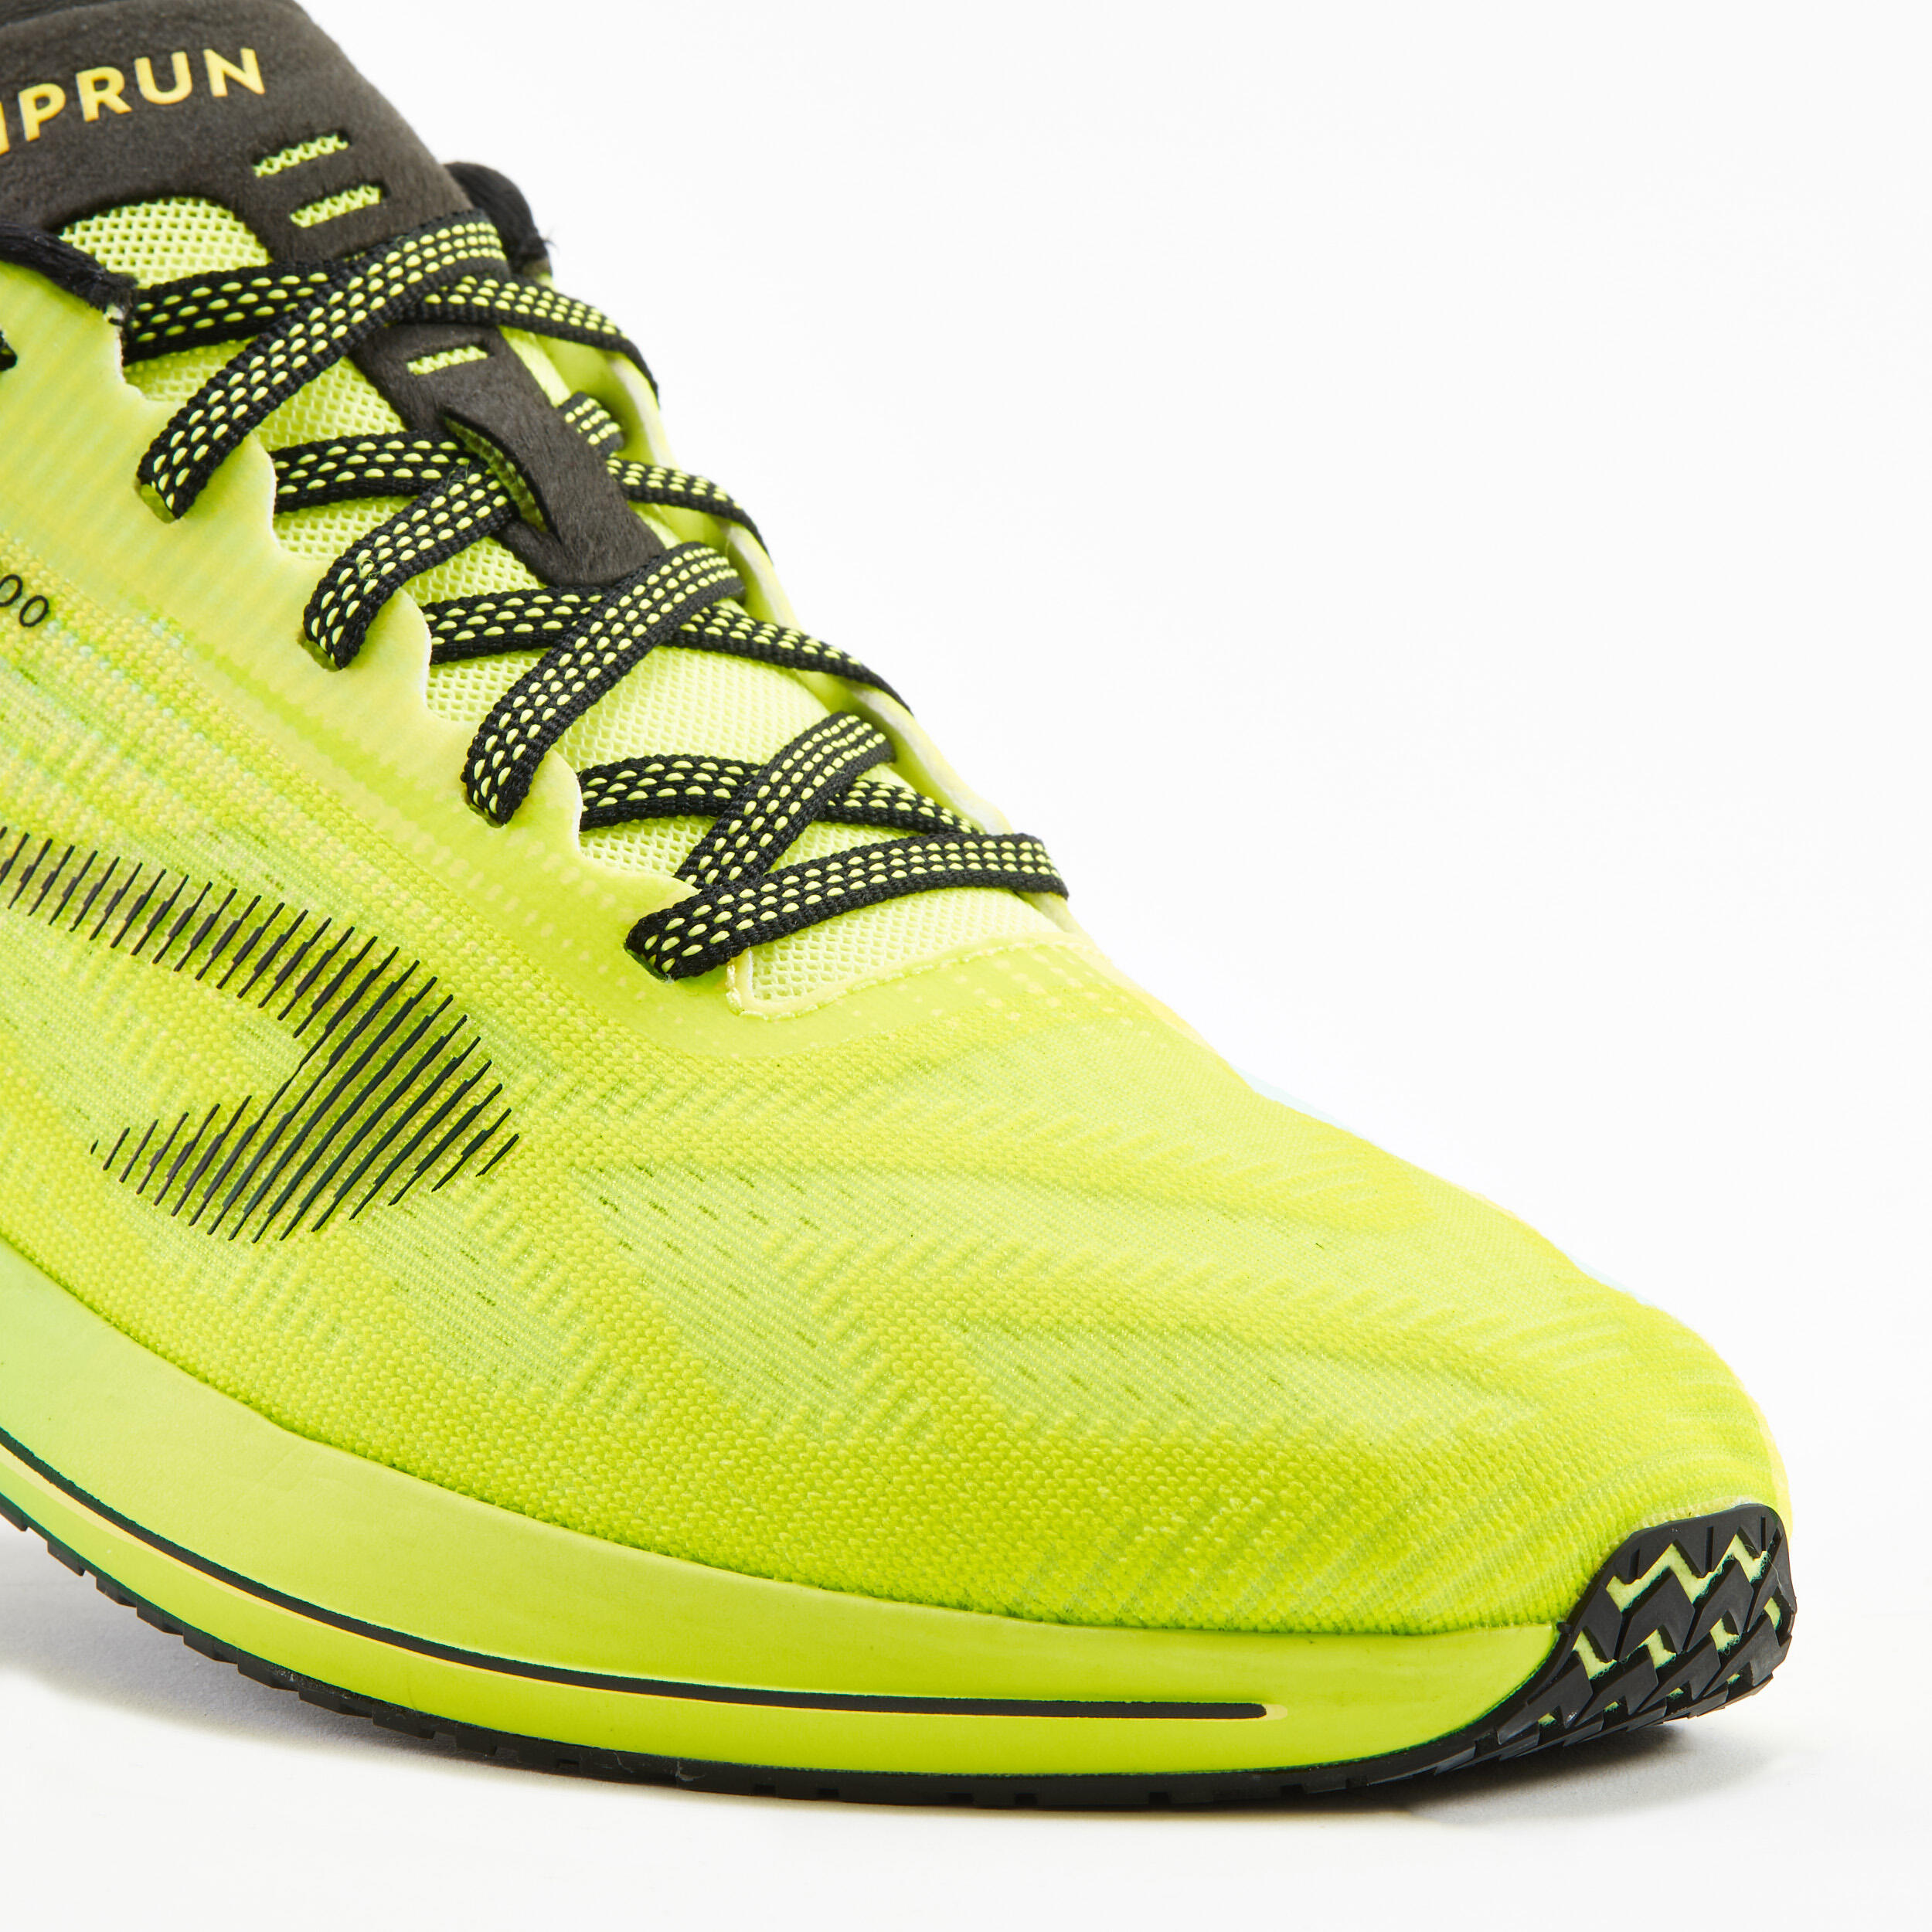 Men's running shoes - KIPRUN KD800 - green yellow 6/9